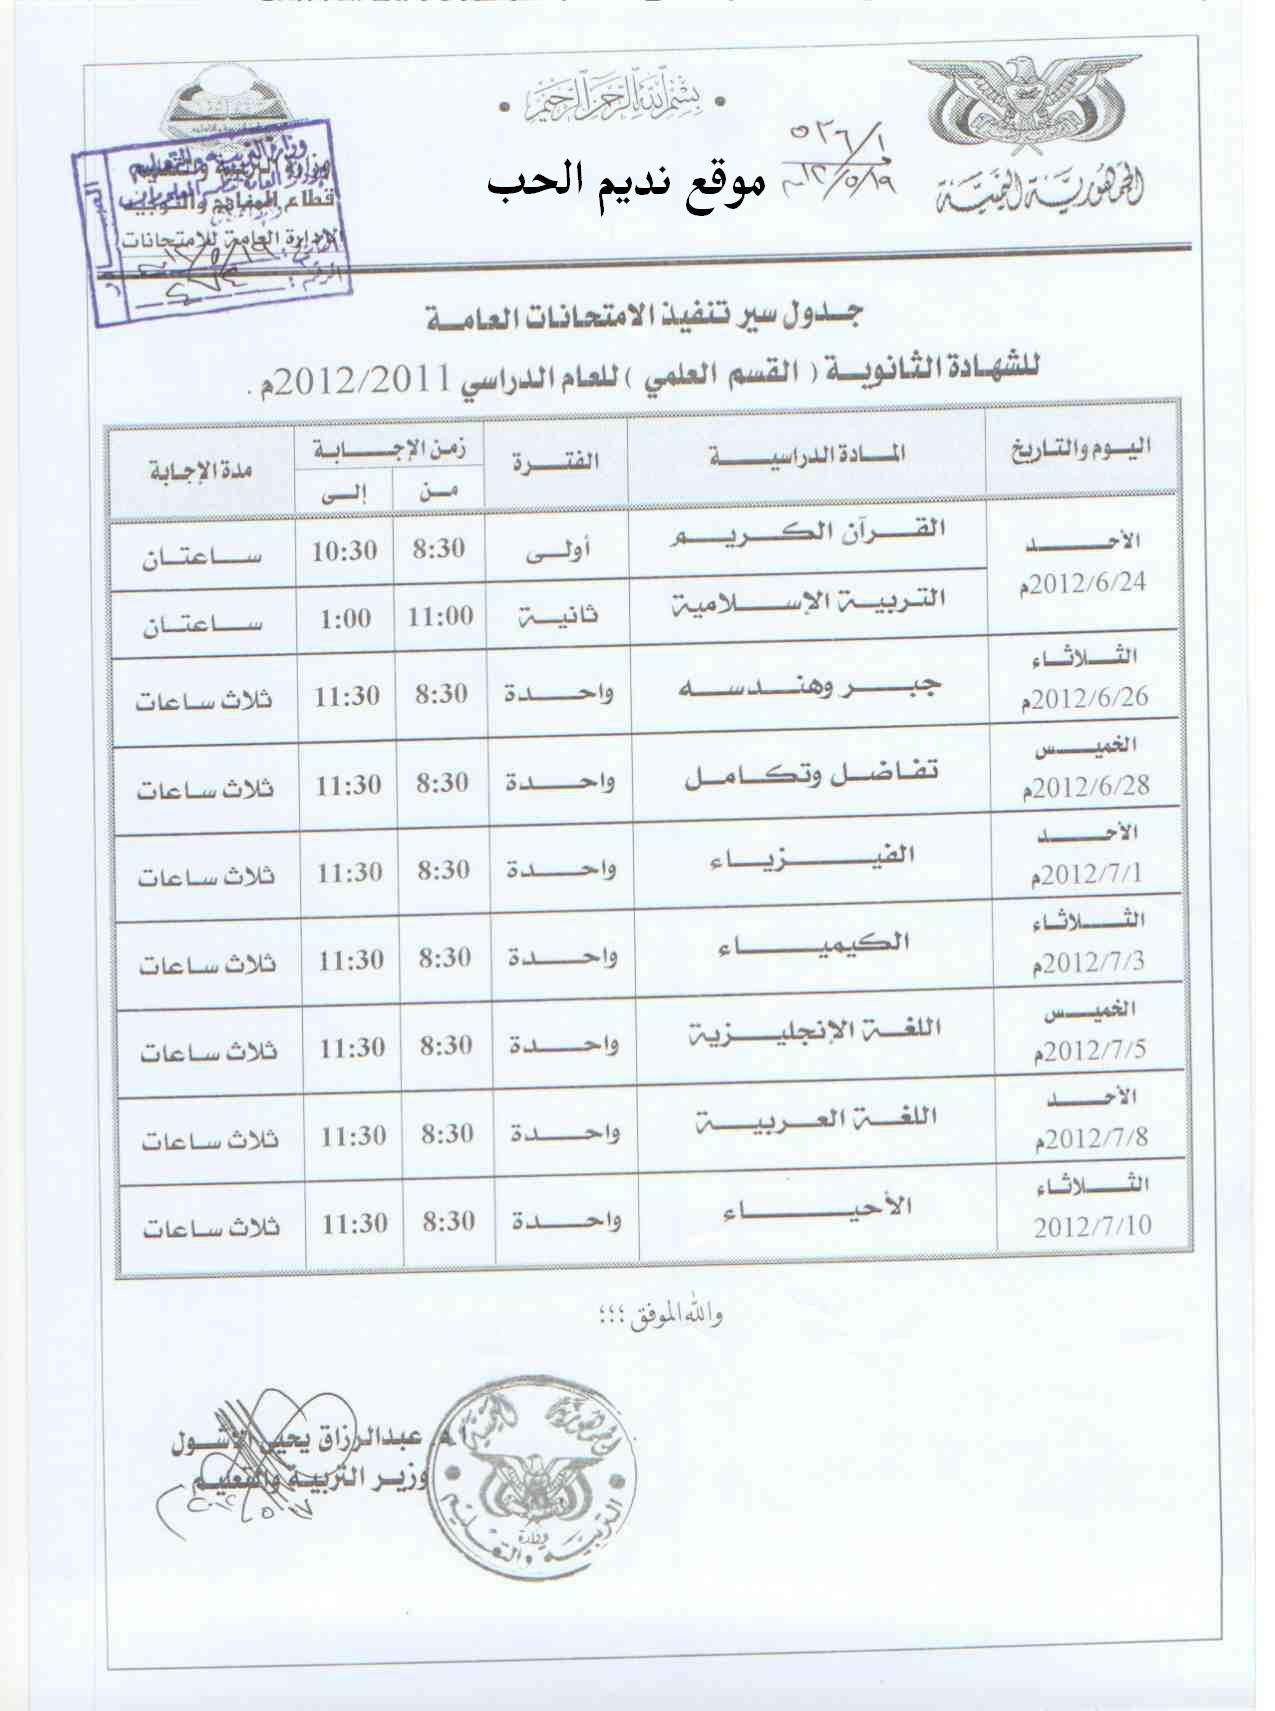 جدول اختبارات ثالث ثانوي علمي للعام 2011 / 2012 اليمن Oouo_o12